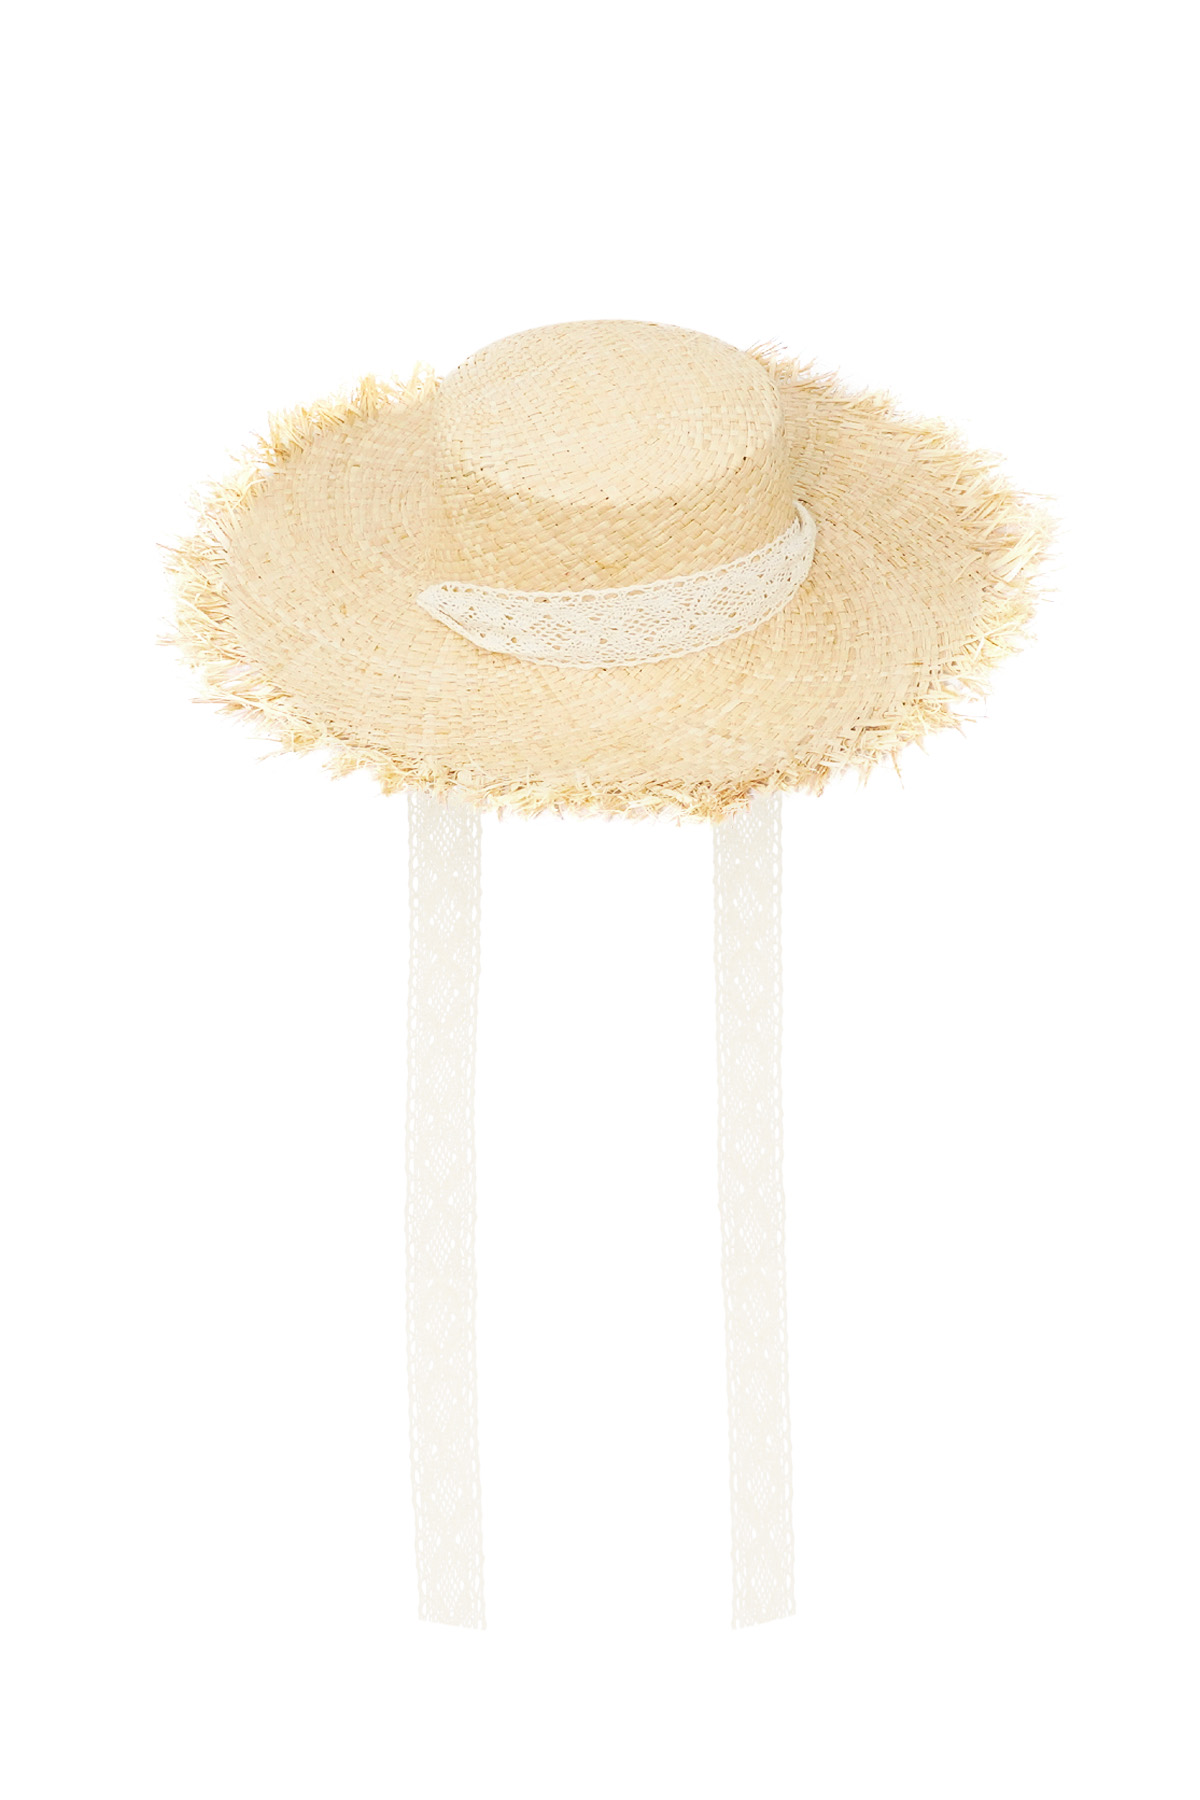 Chapeau de plage - blanc cassé h5 Image6